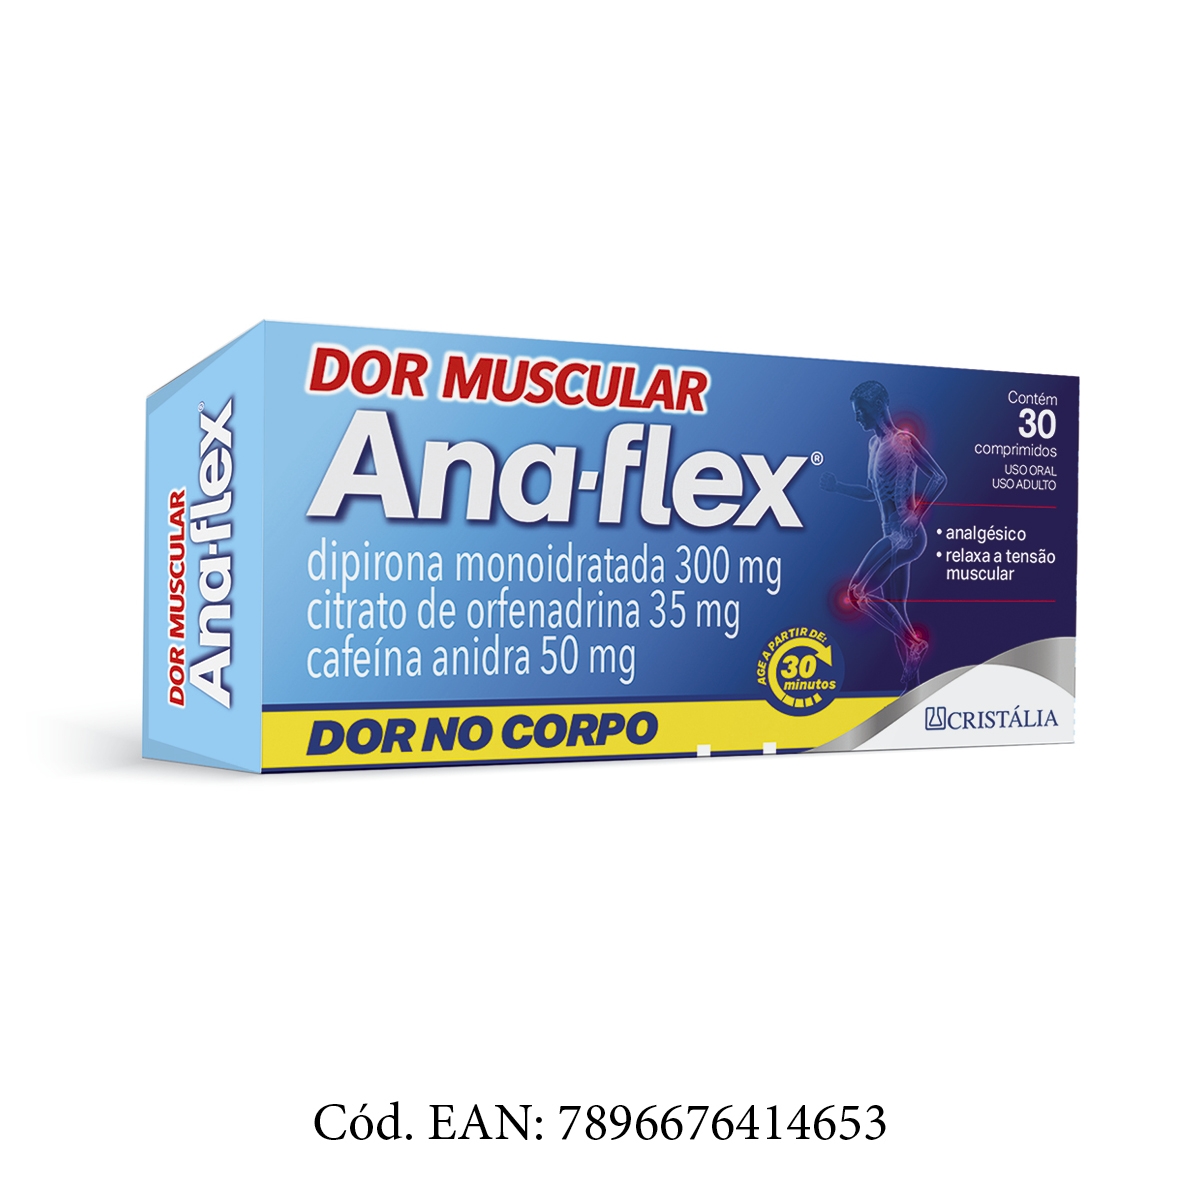 Ana-Flex Citrato de Orfenadrina 35mg + Dipirona Monoidratada 300mg + Cafeína Anidra 50mg 30 comprimidos